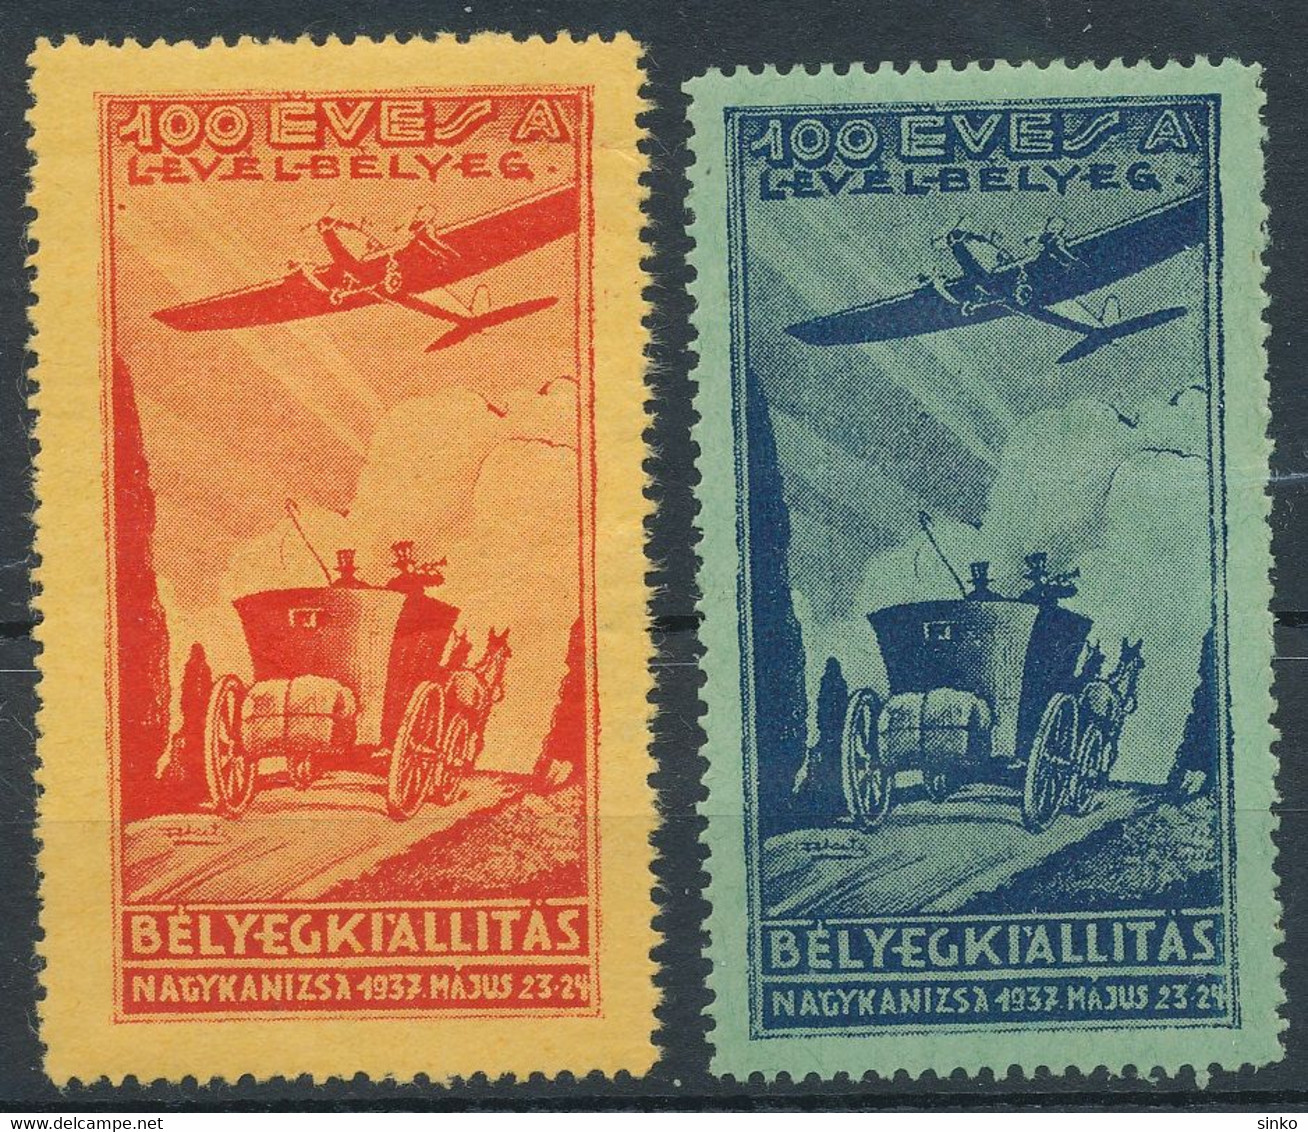 1937. First Stamp Exhibition In Nagykanizsa - Commemorative Sheet - Herdenkingsblaadjes